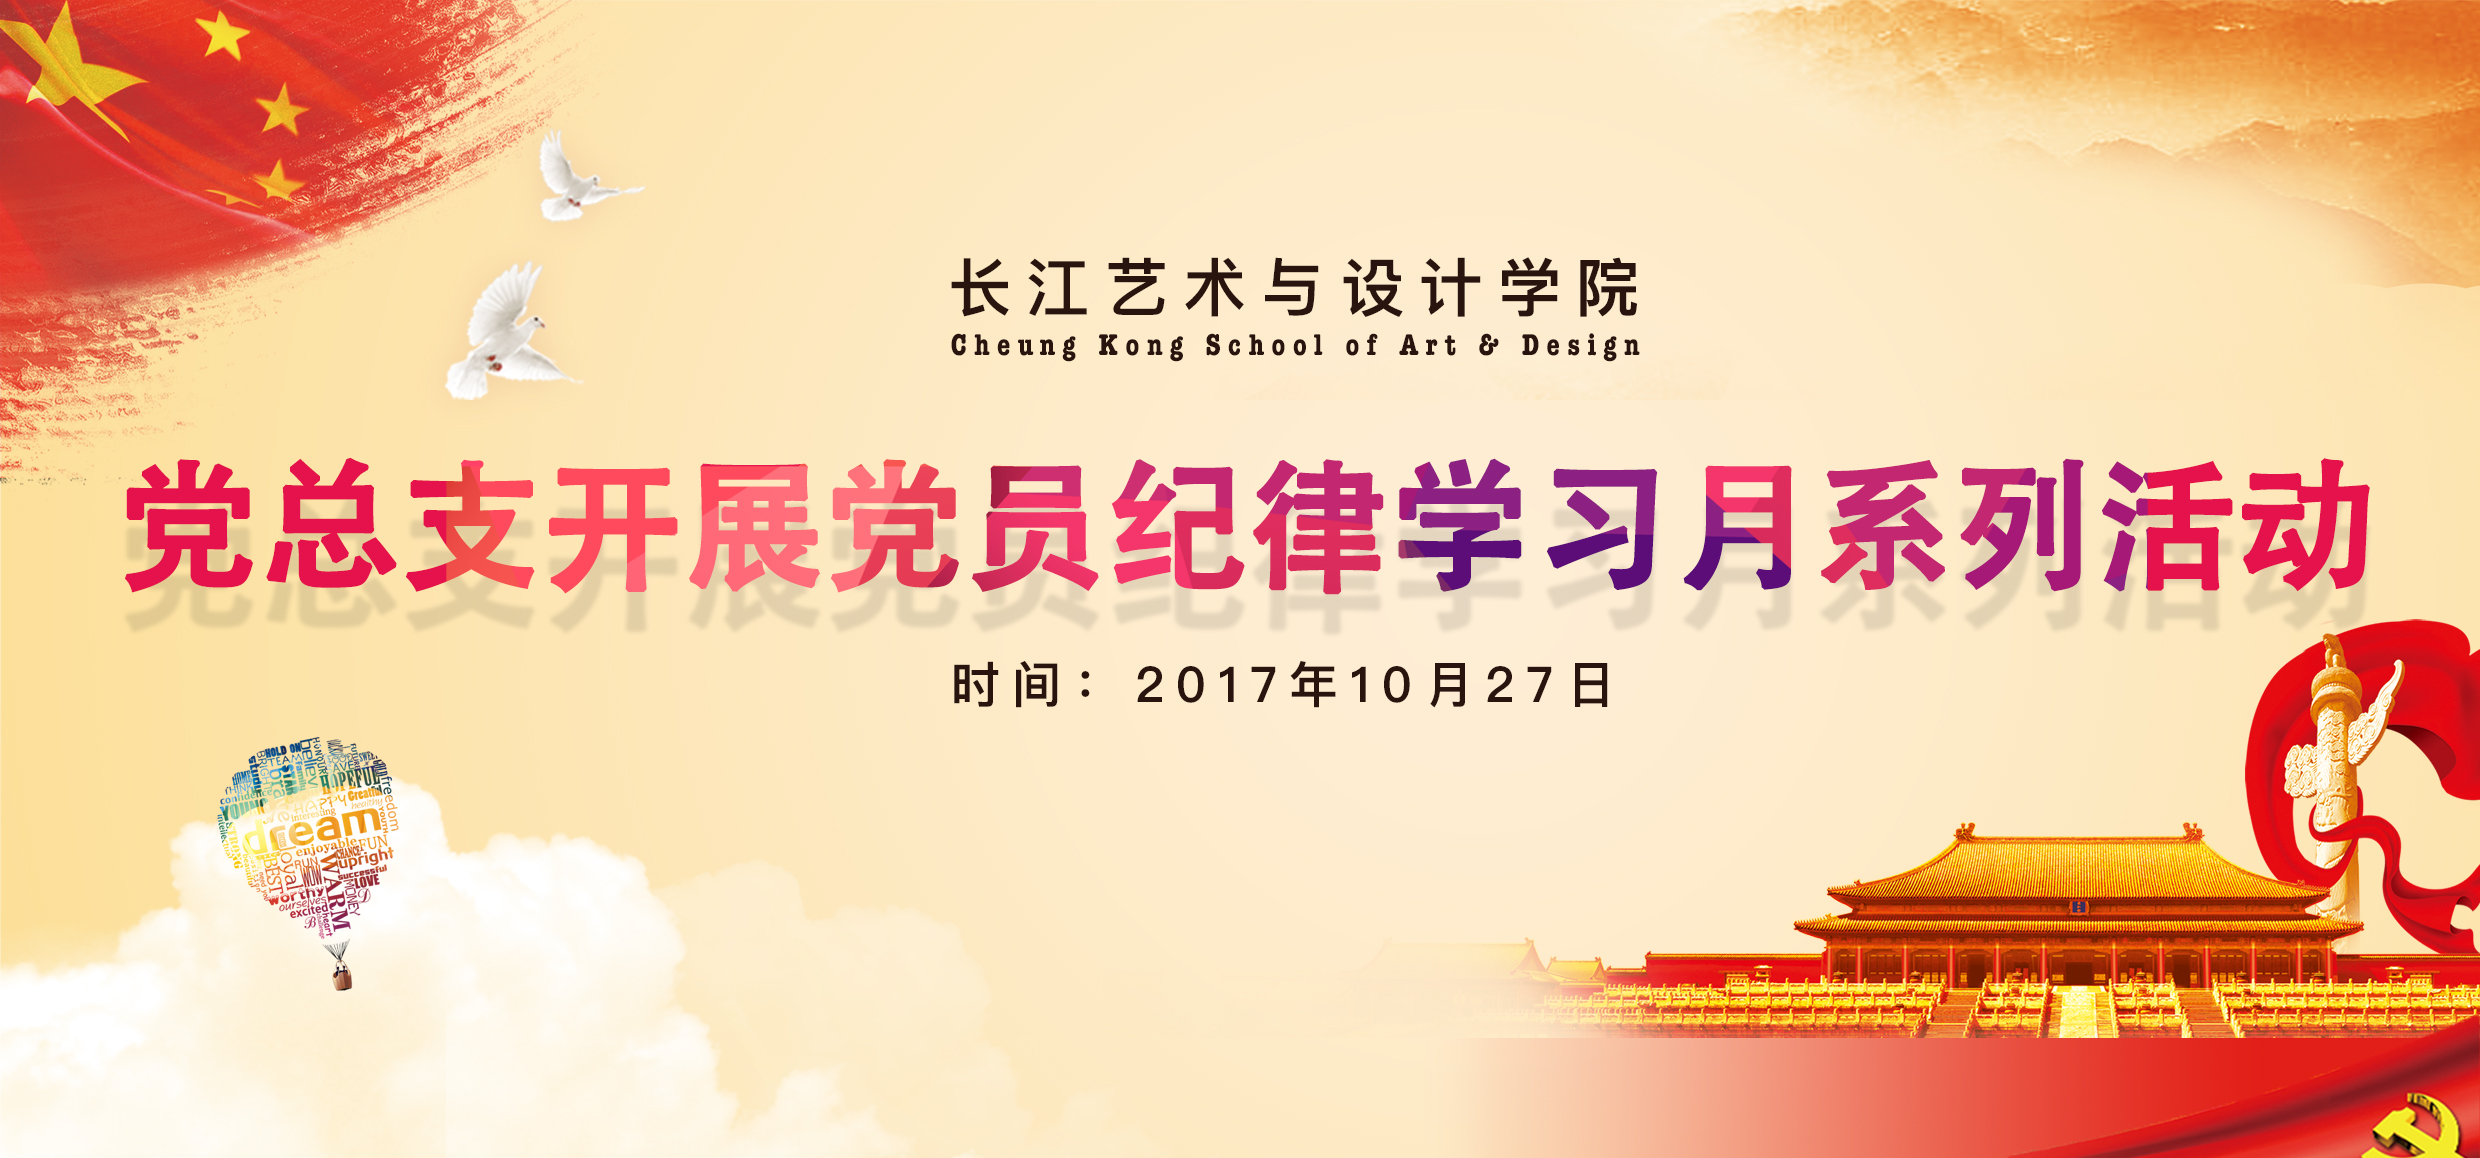 长江艺术与设计学院党总支开展党员纪律学习月系列活动